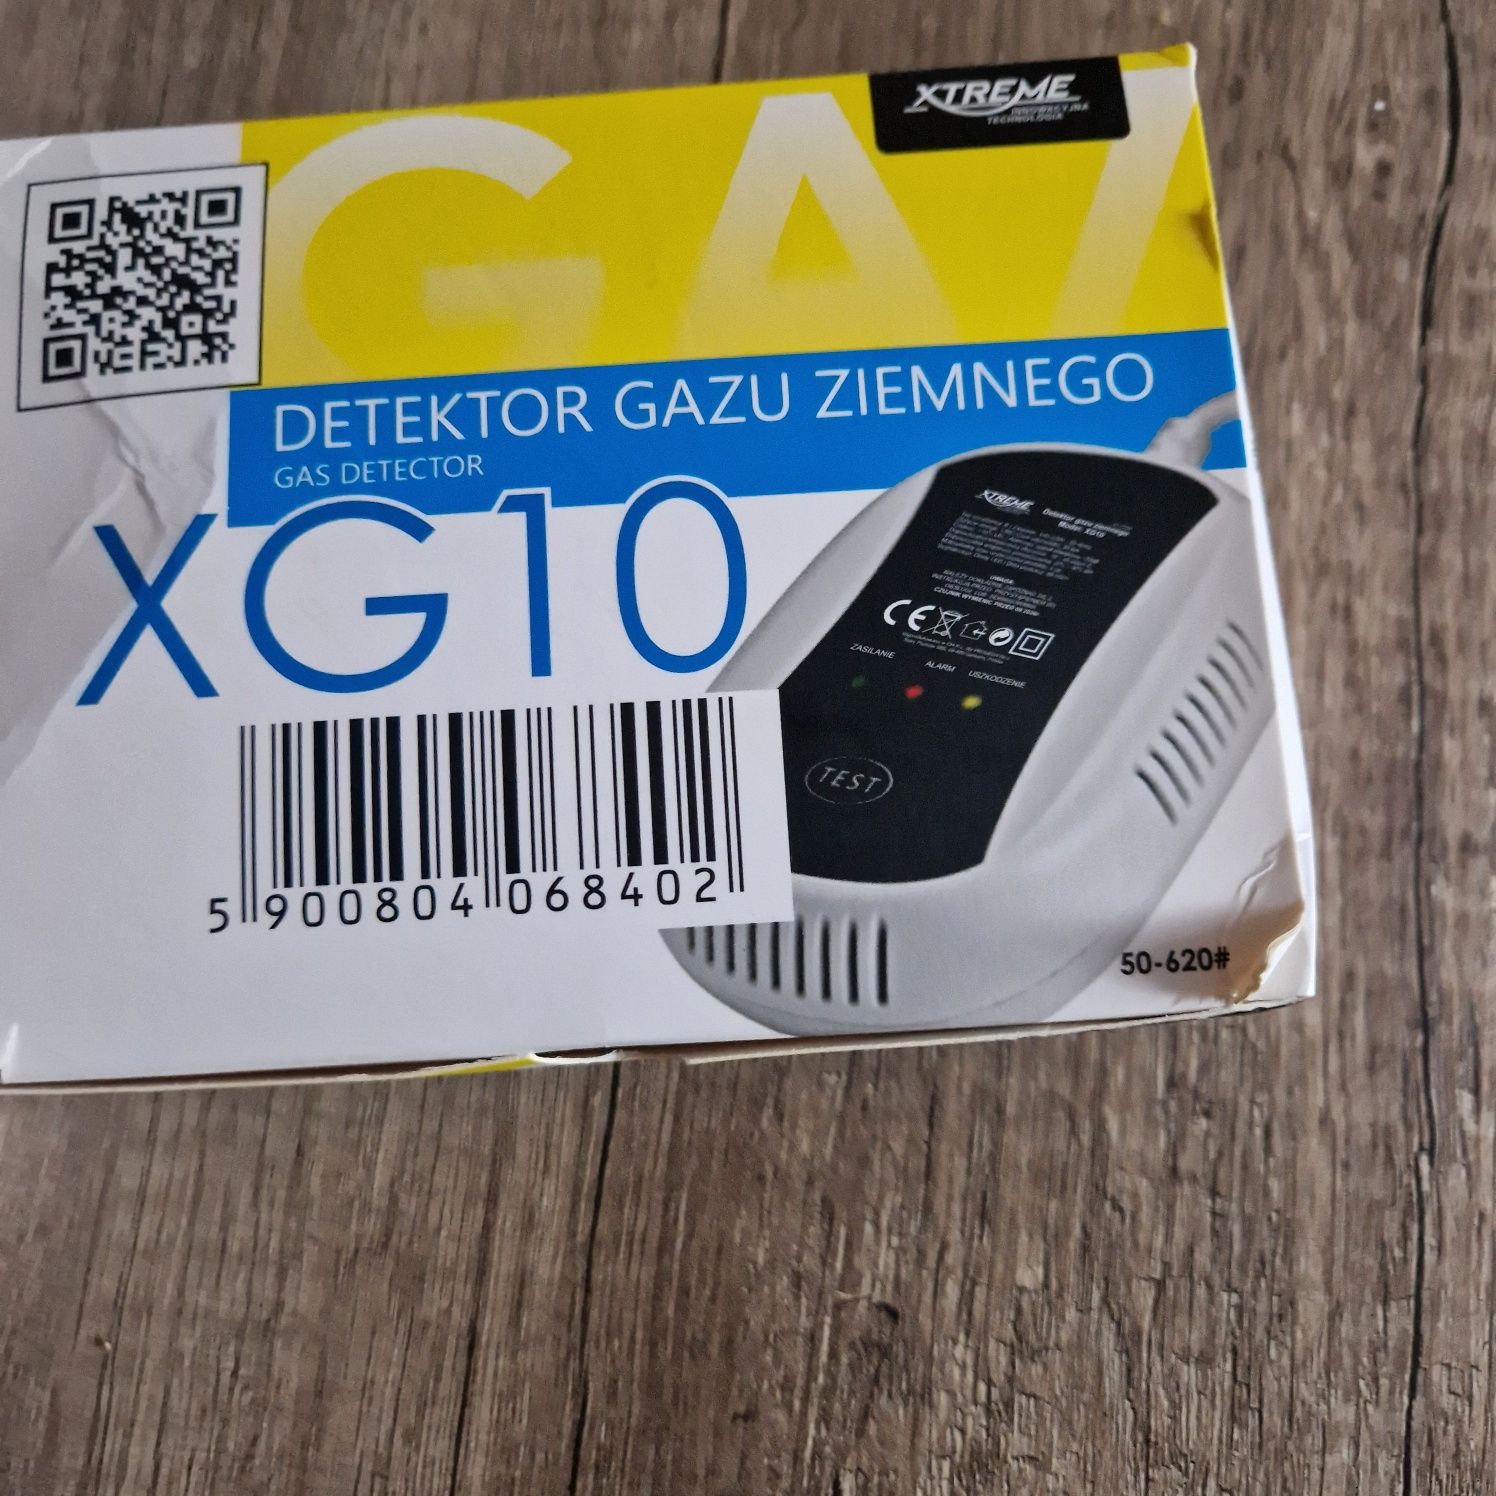 Detektor gazu ziemnego XG10